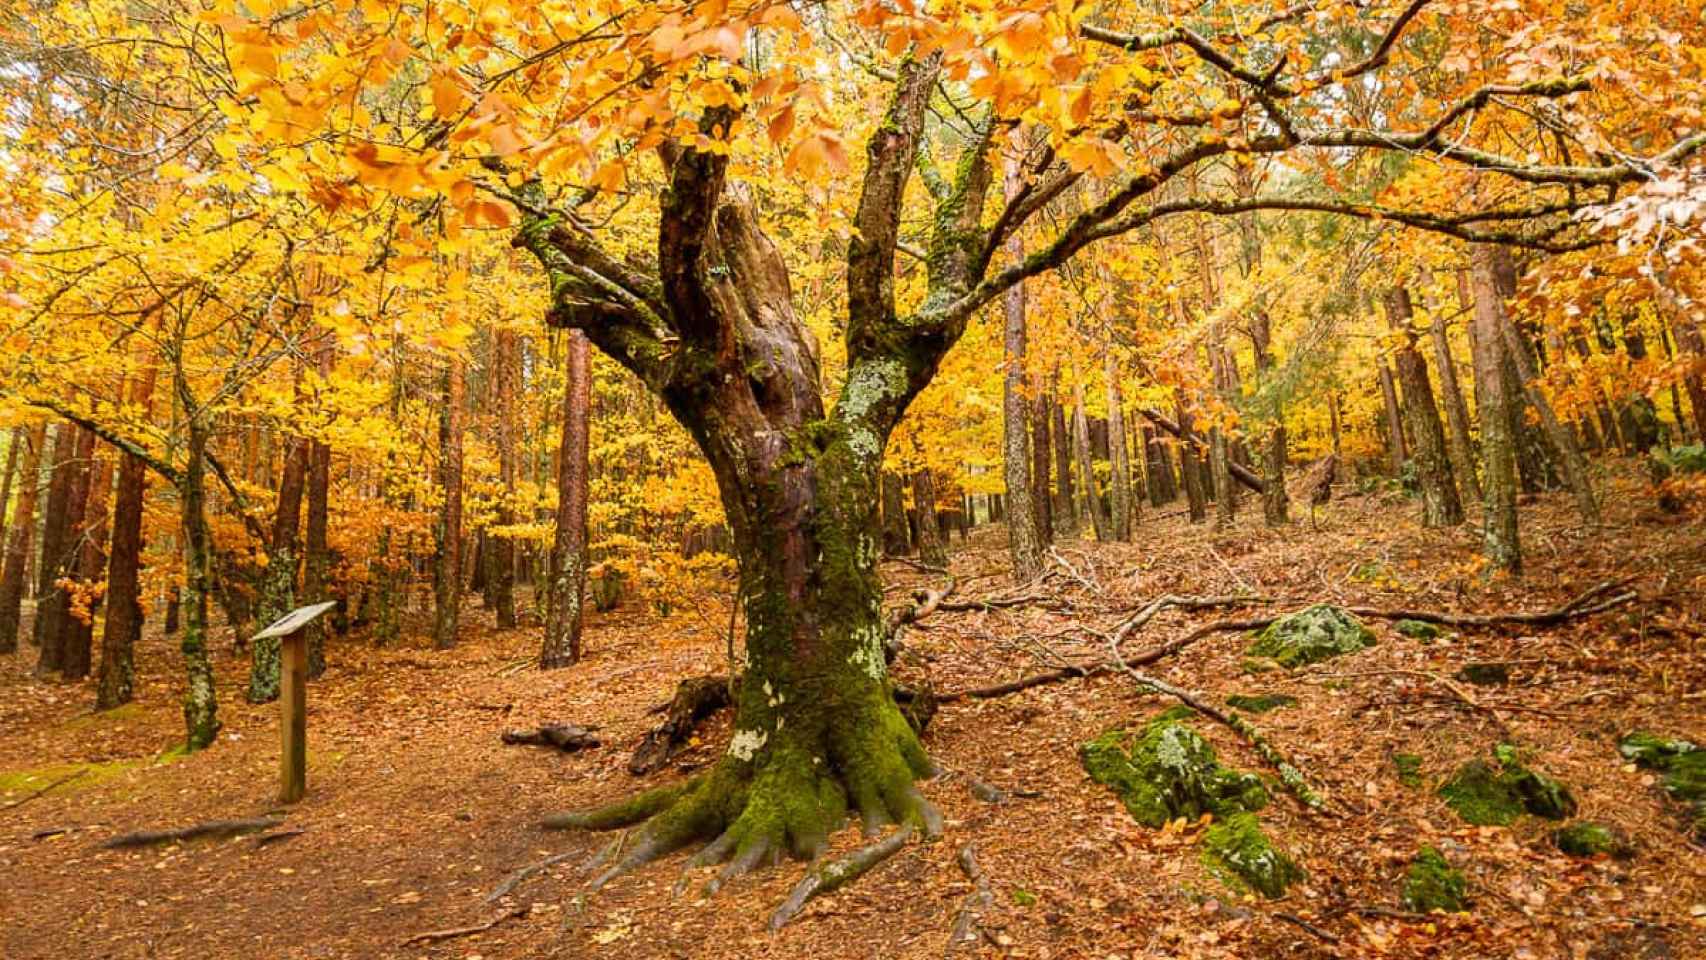 Conoce la ruta de senderismo más bonita cerca de Madrid: recorre uno de los bosques más antiguos de Europa.